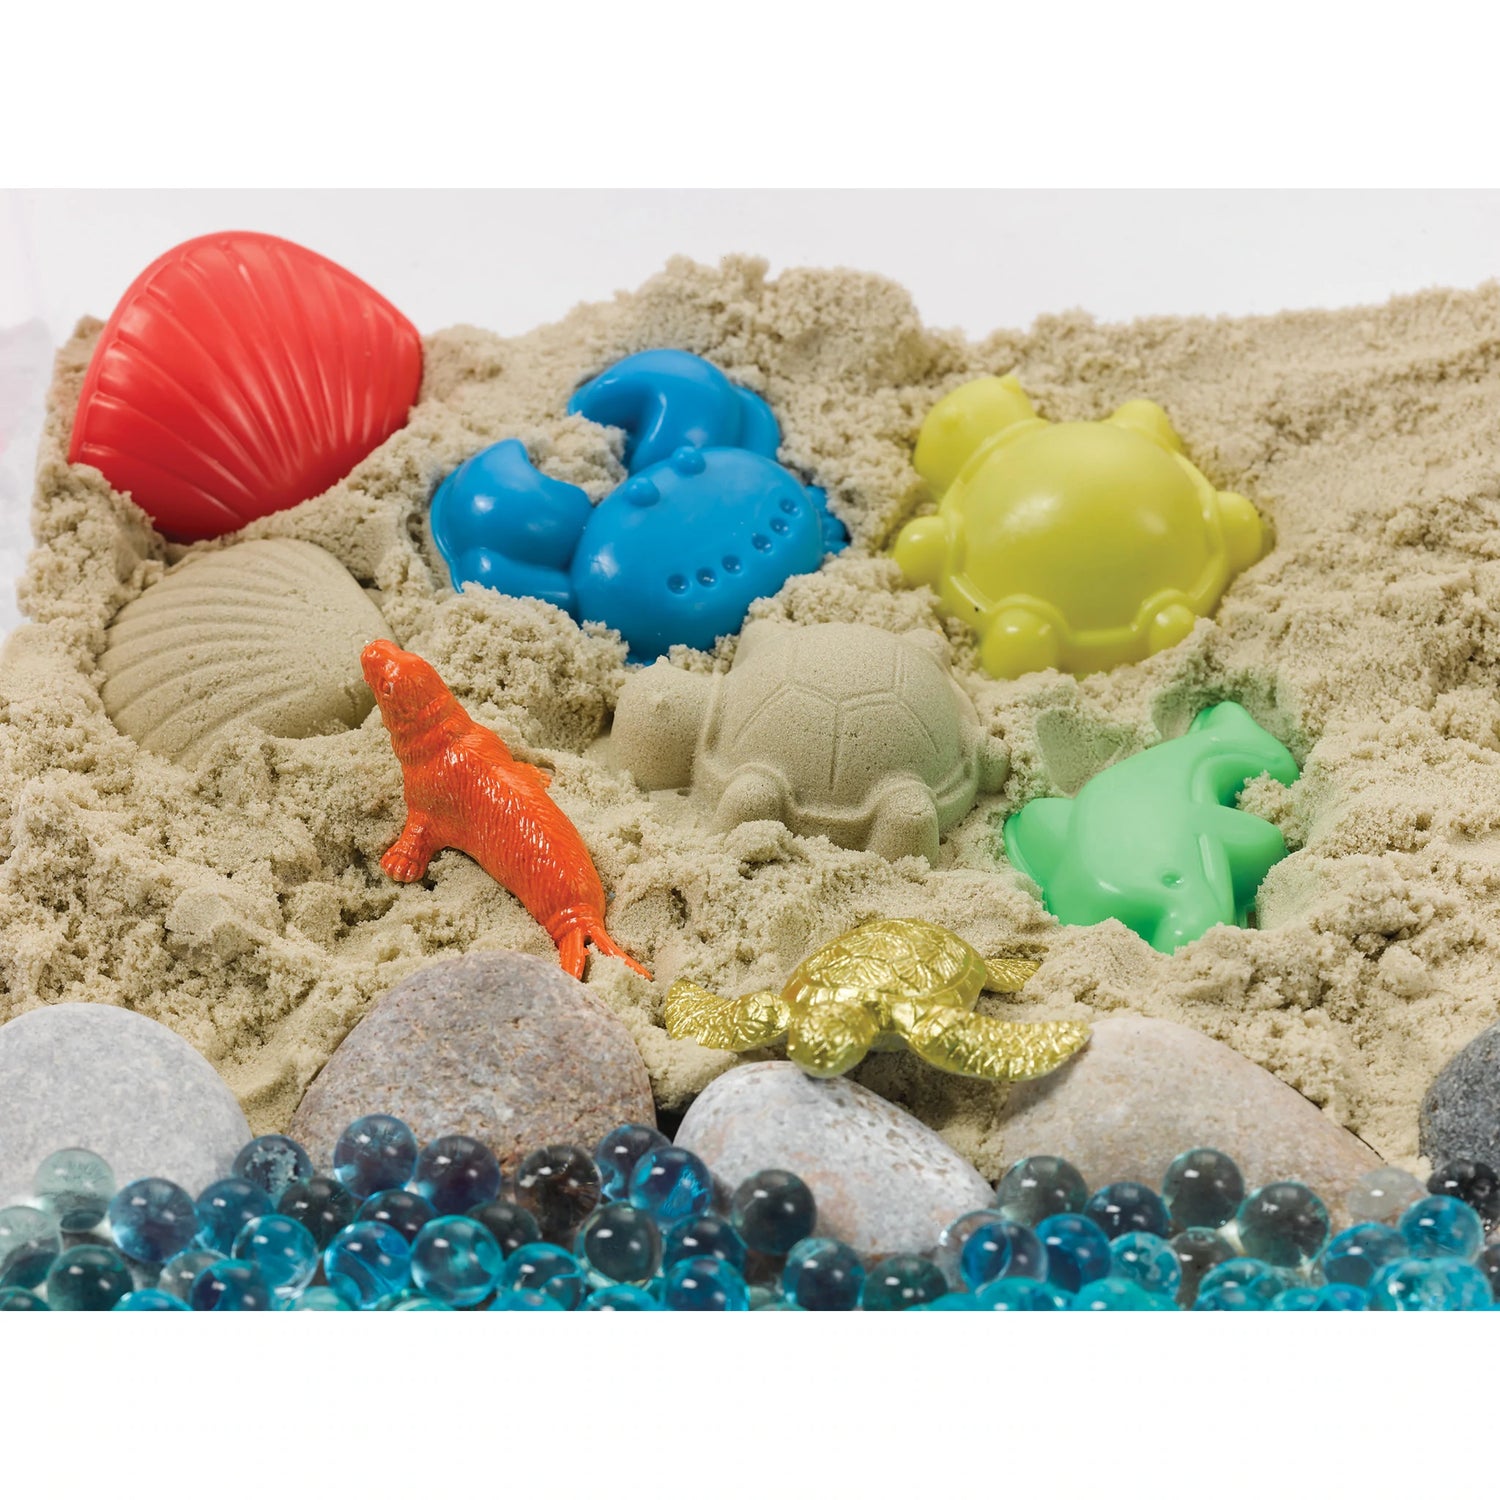 Water Beads for Kids - Sea Turtle Sensory Bin